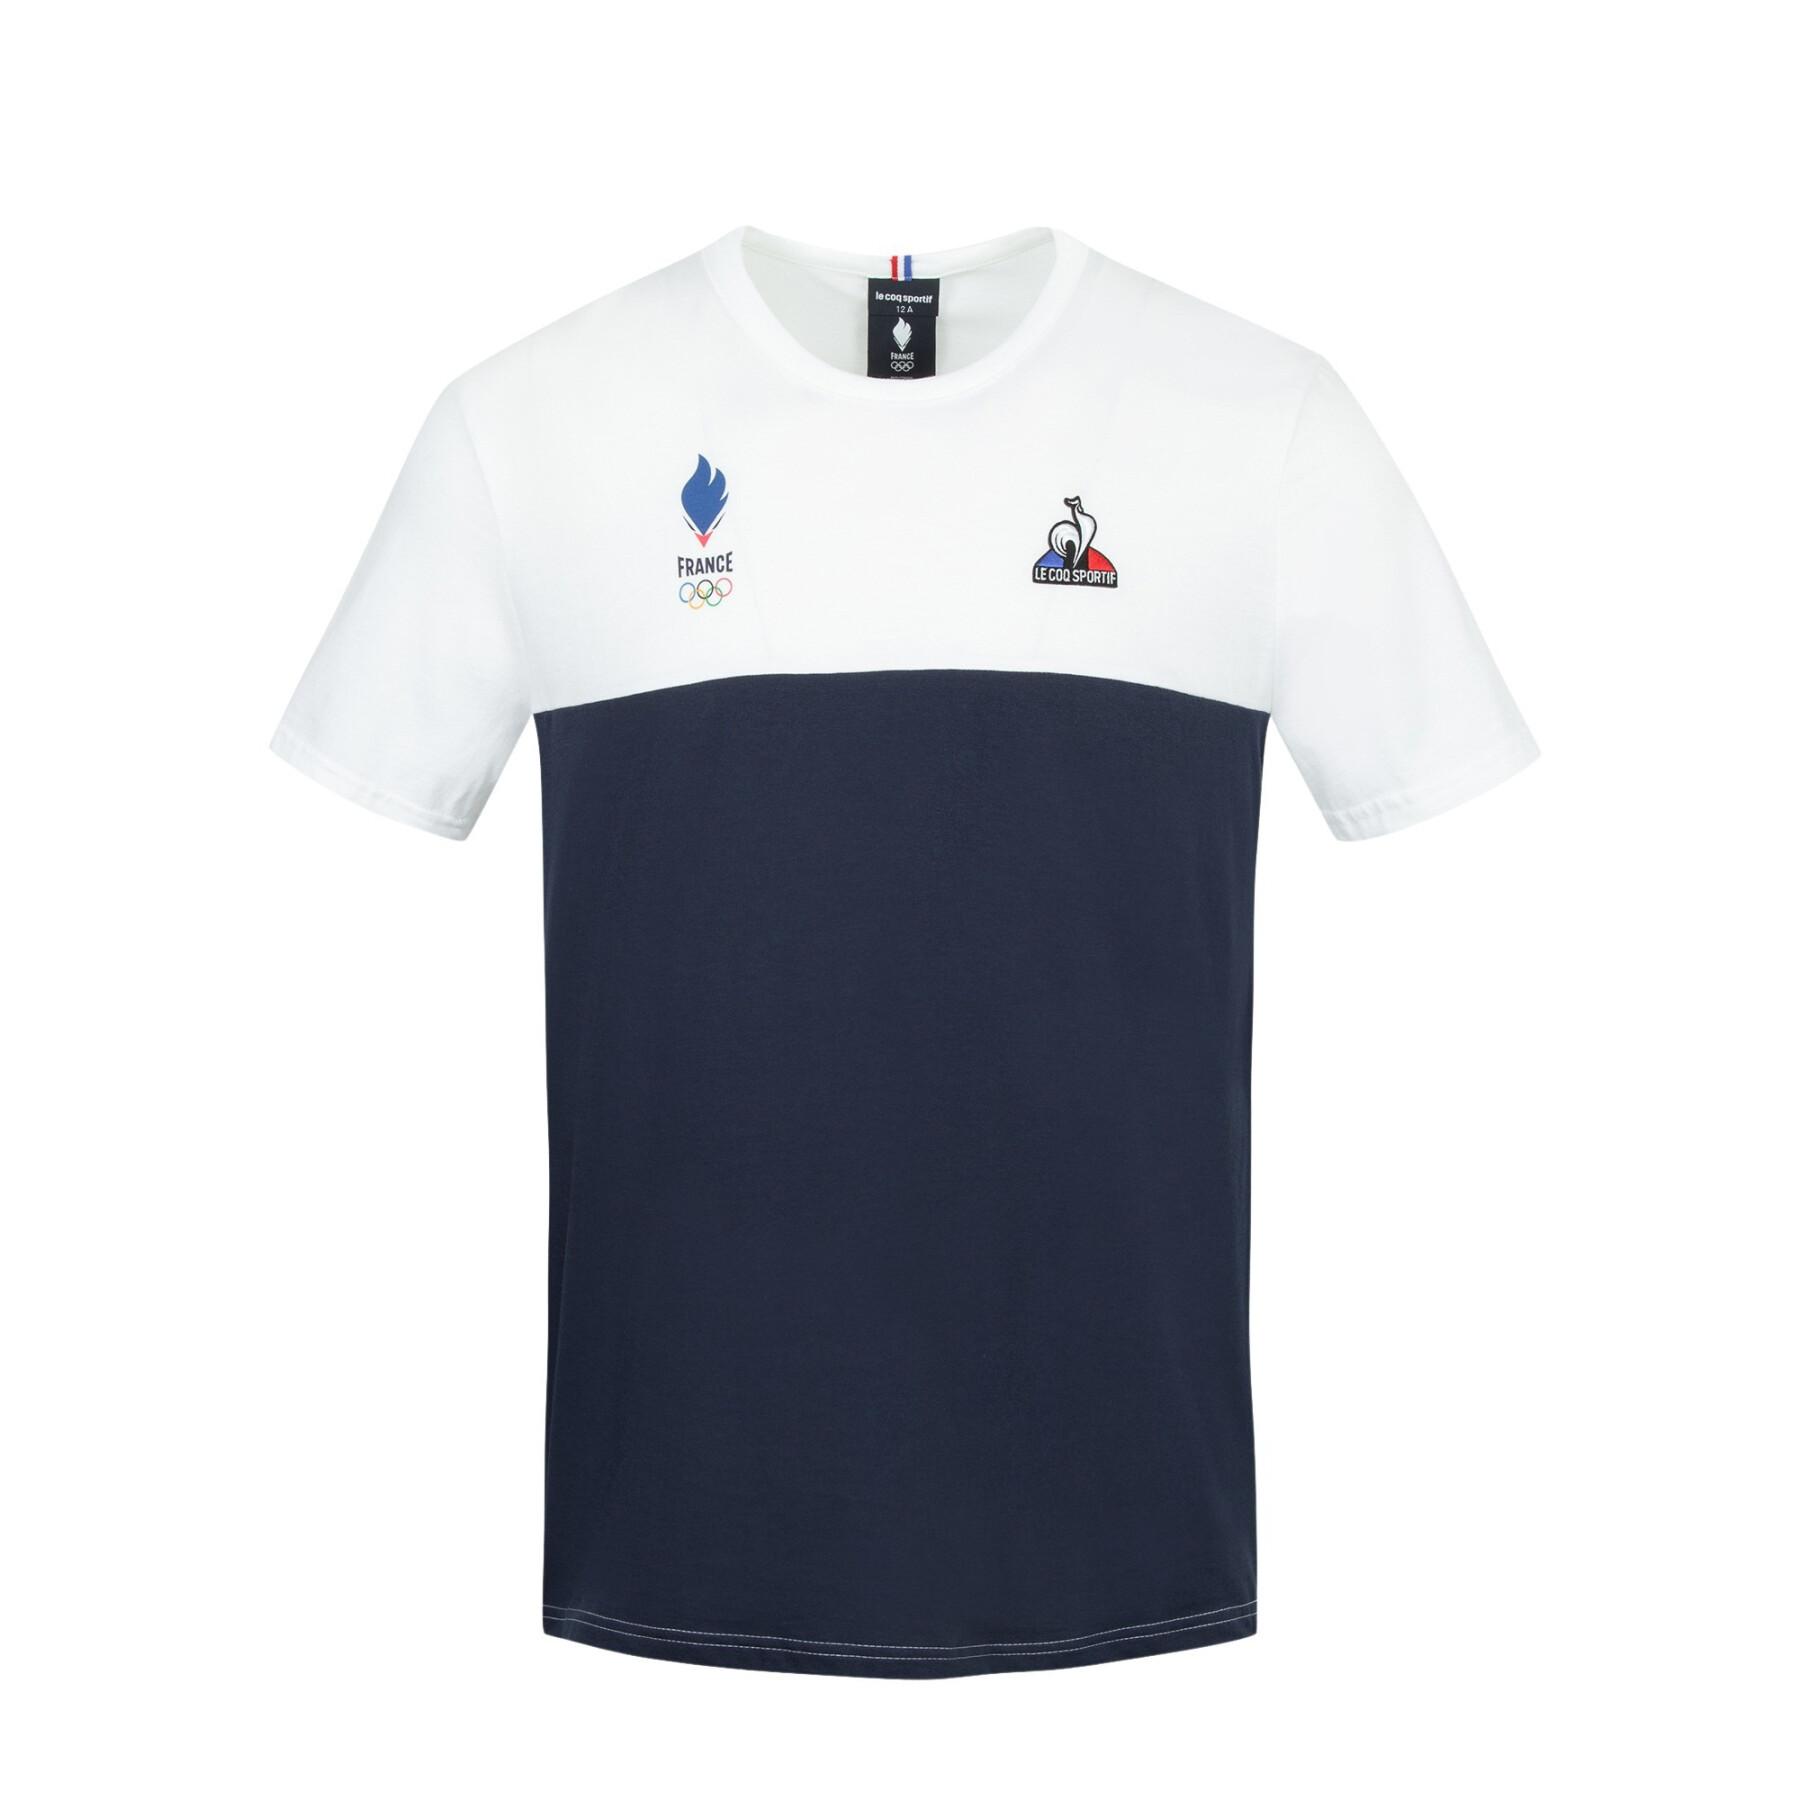 Kinder-T-shirt France Olympique 2022 Comm N°2